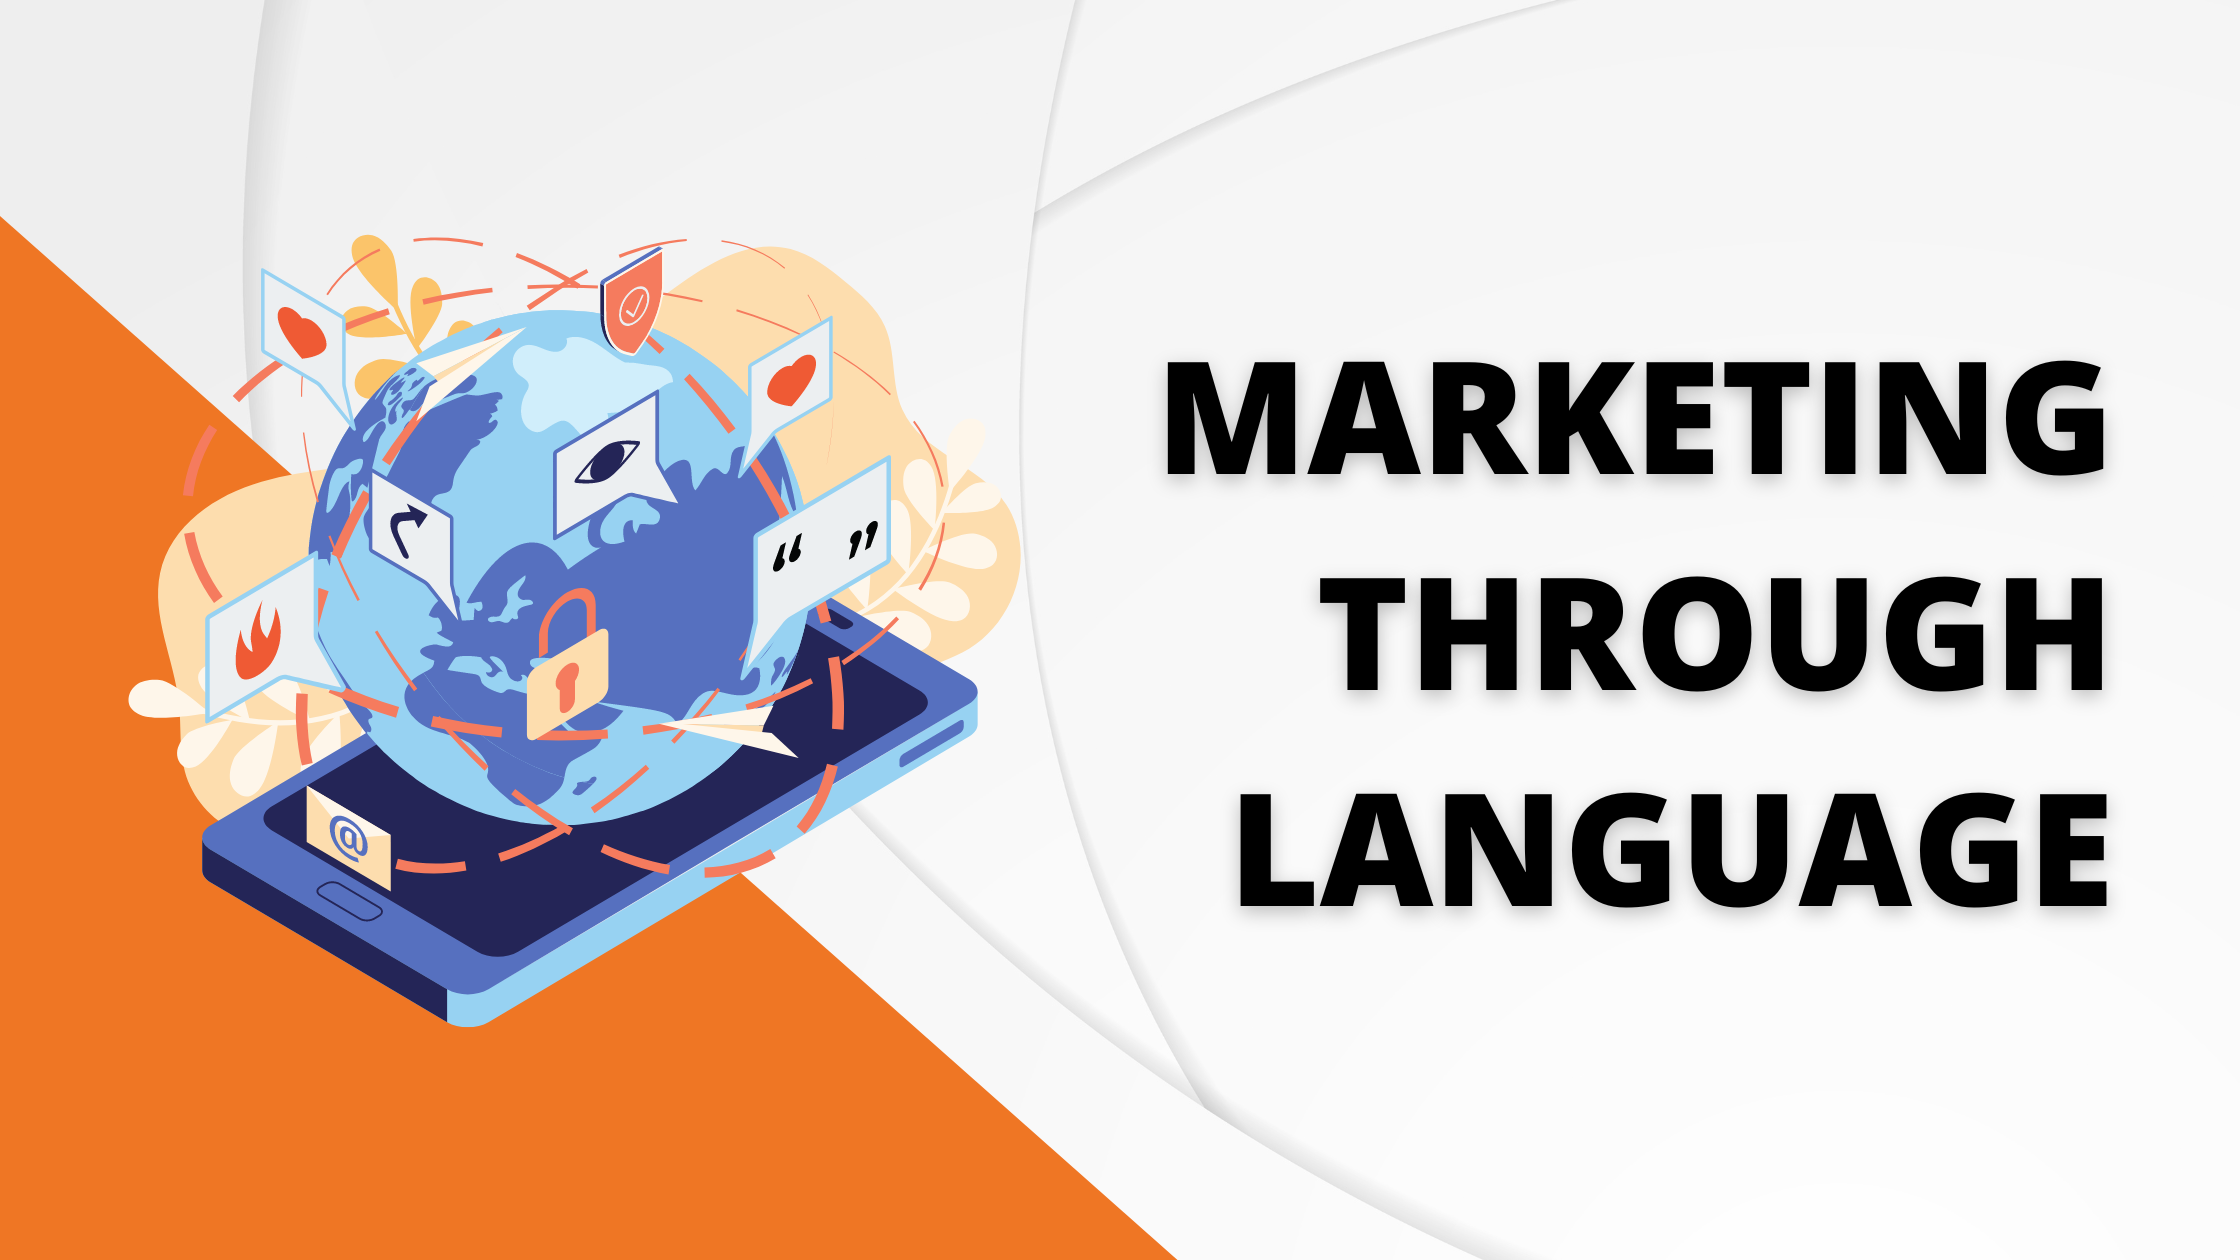 Marketing through Language